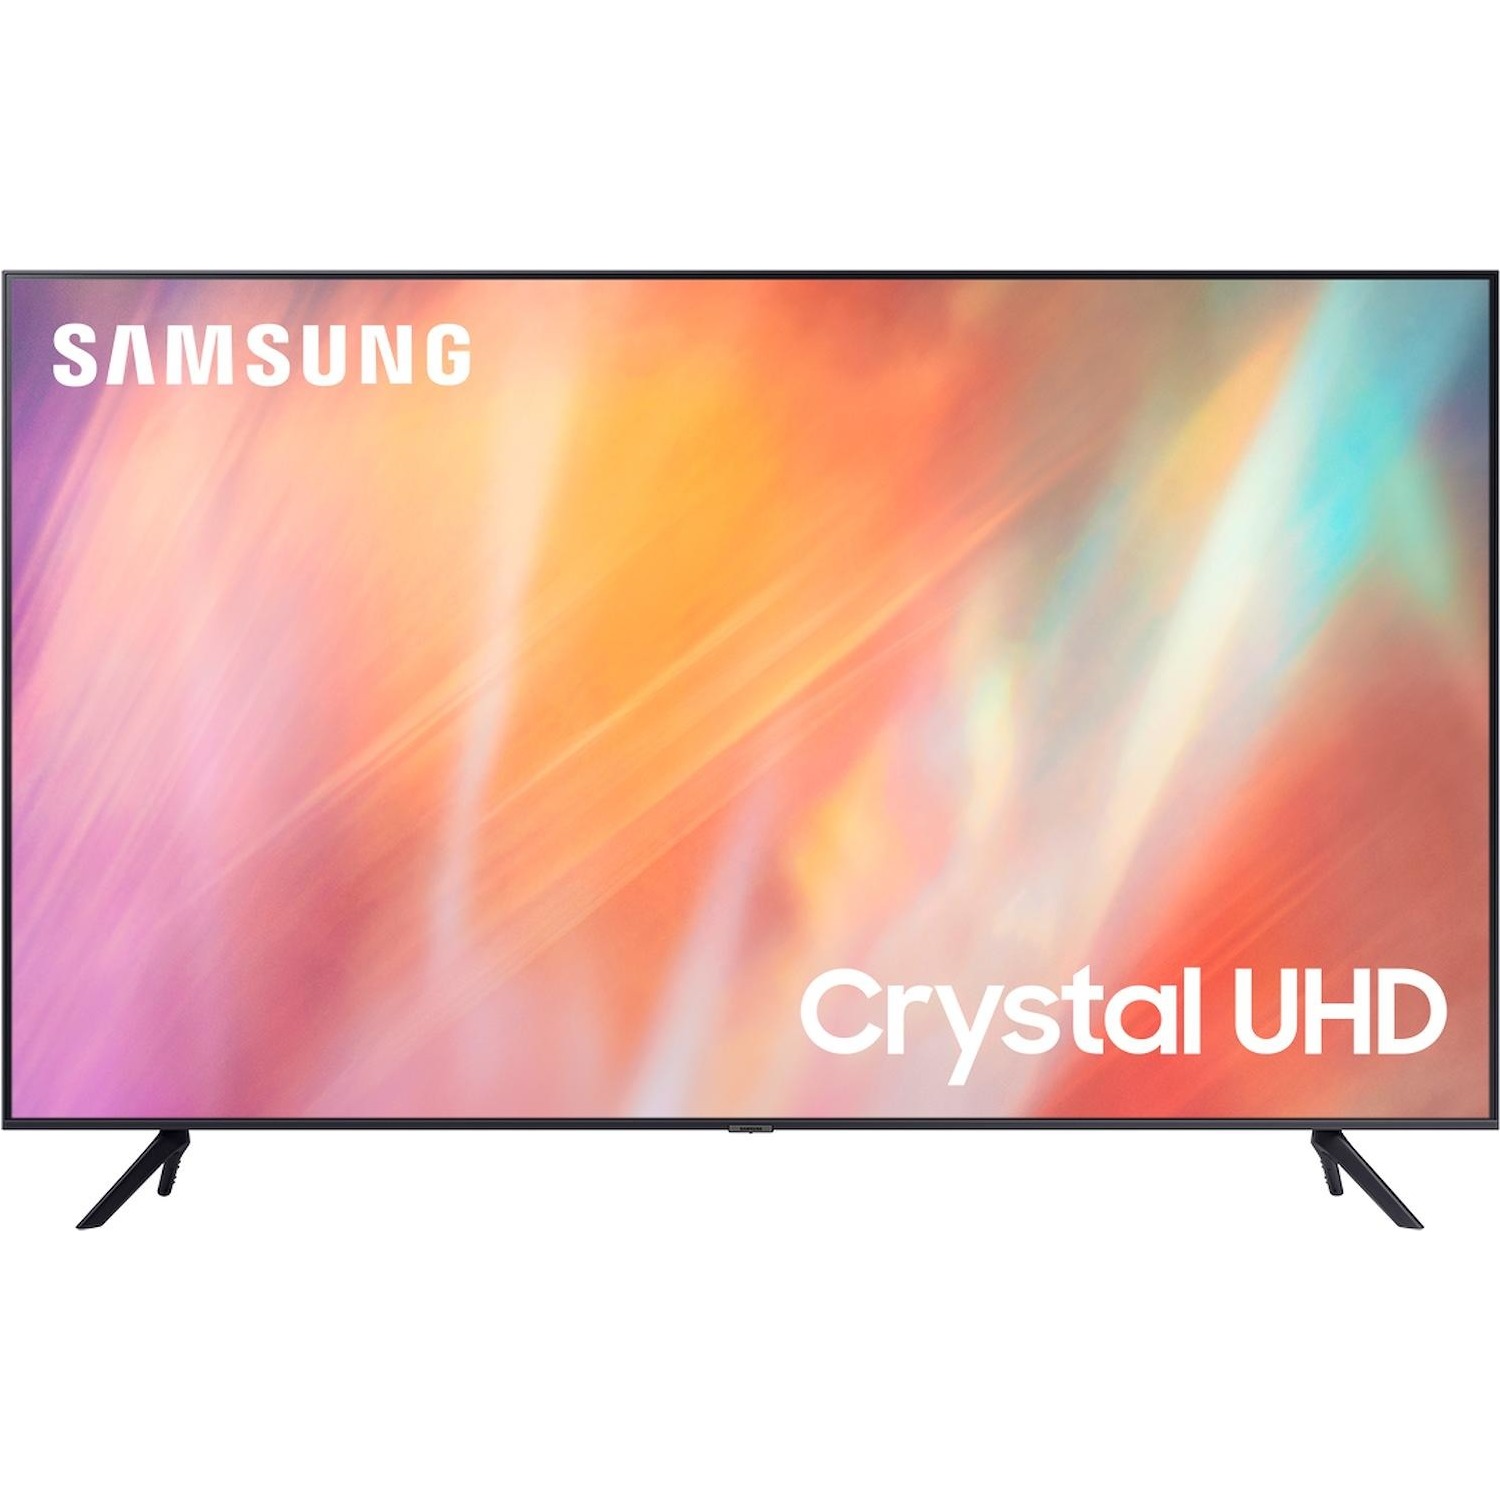 Immagine per TV LED Smart 4K UHD Samsung 65AU7170 da DIMOStore